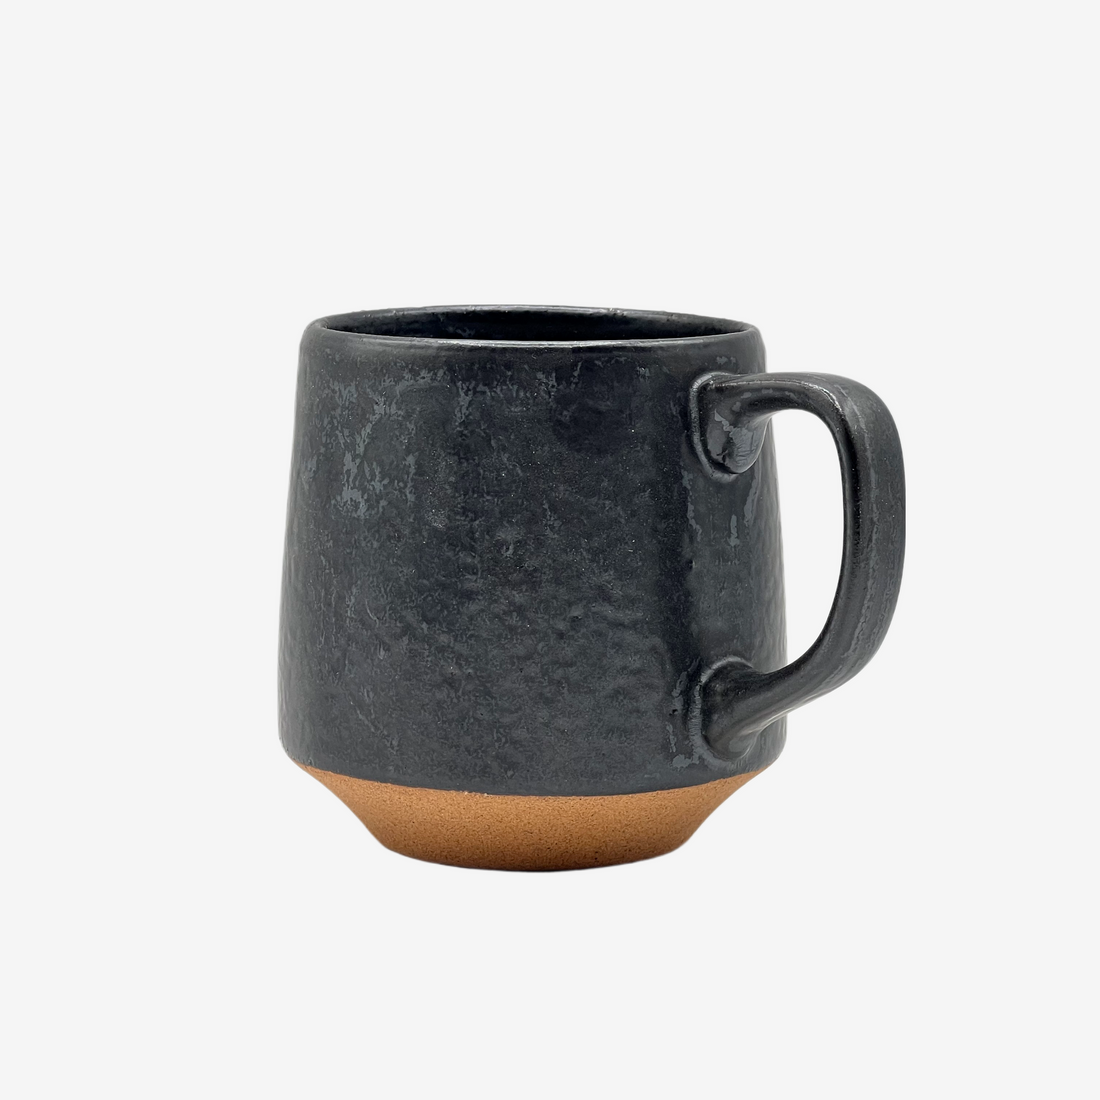 Ishi Black Mug - Japanese Tea Mug